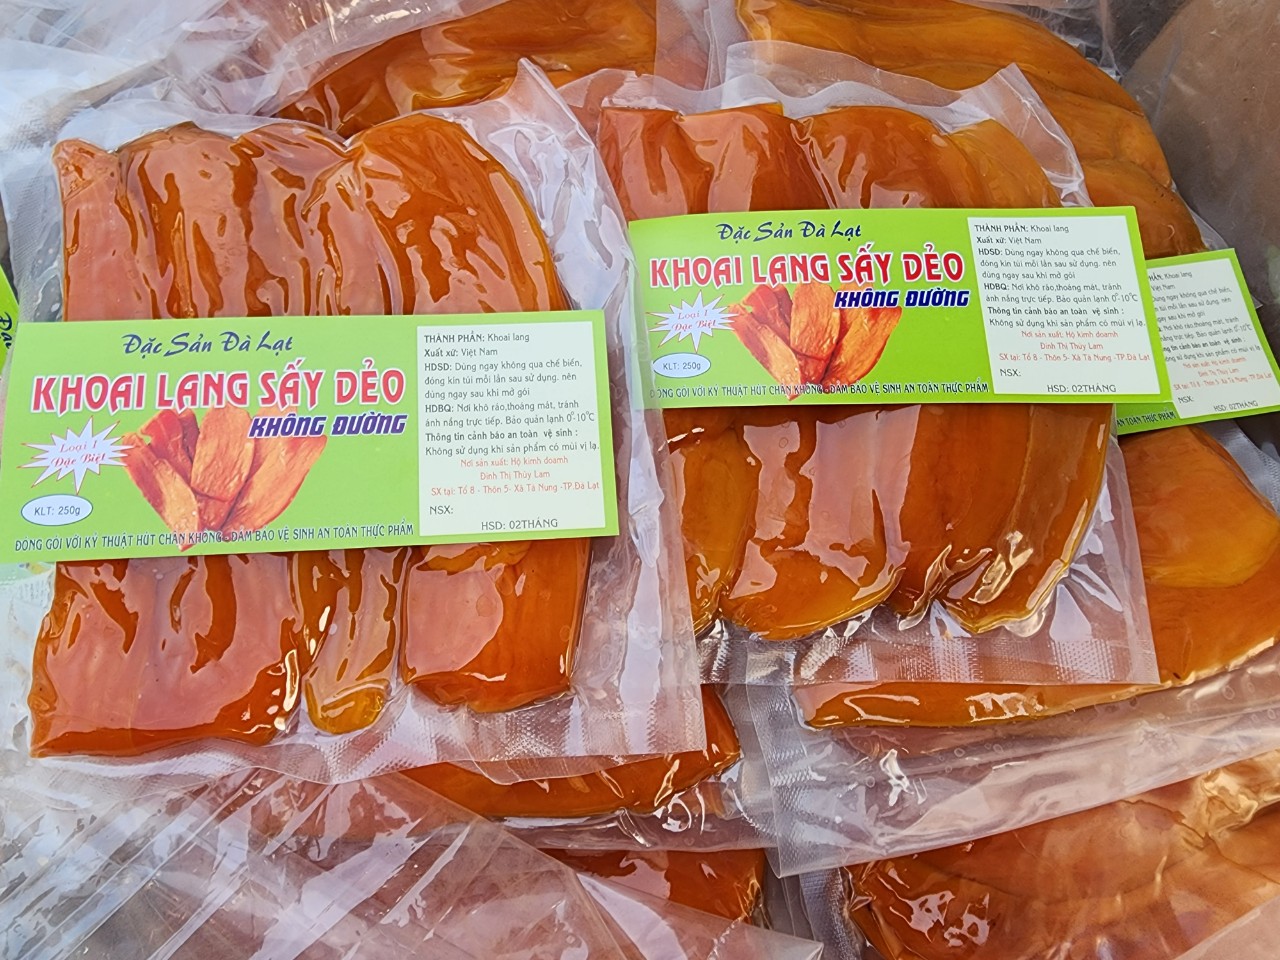 Khoai lang mật sấy dẻo loại 1 đặc sản Đà Lạt gói hút chân không 250gram |  Lazada.vn